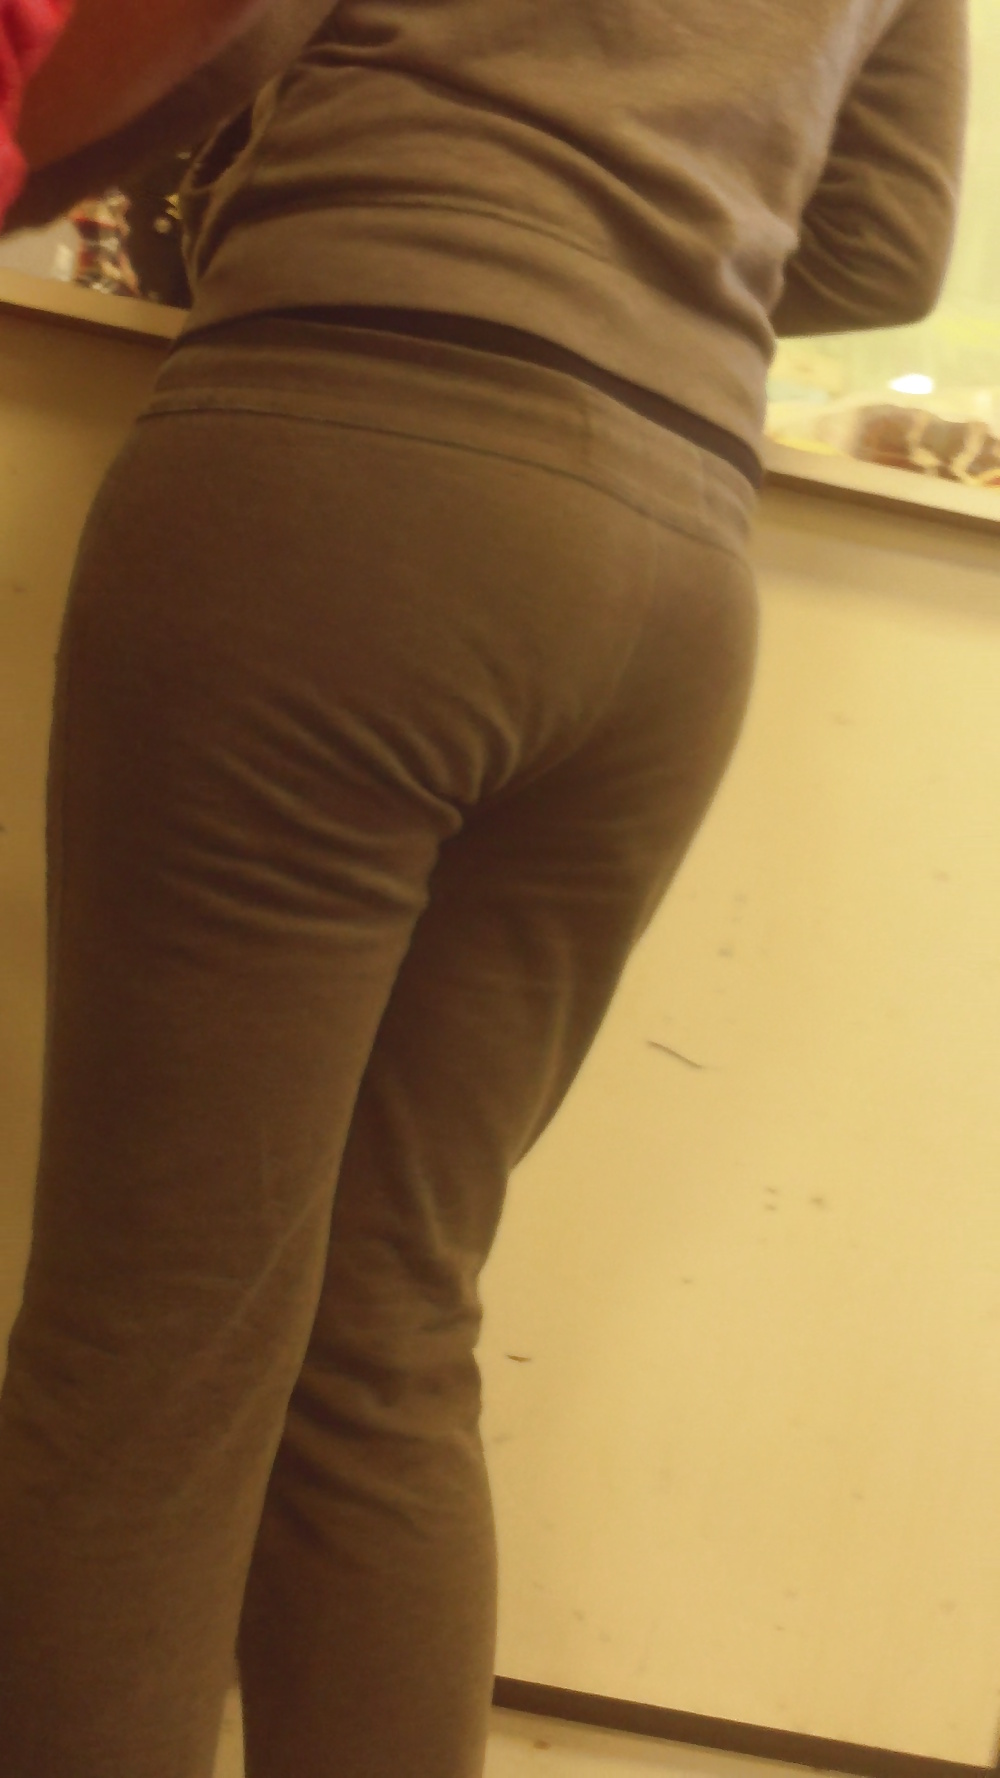 Popular teen girls ass & butt in jeans Part 6 #32009728